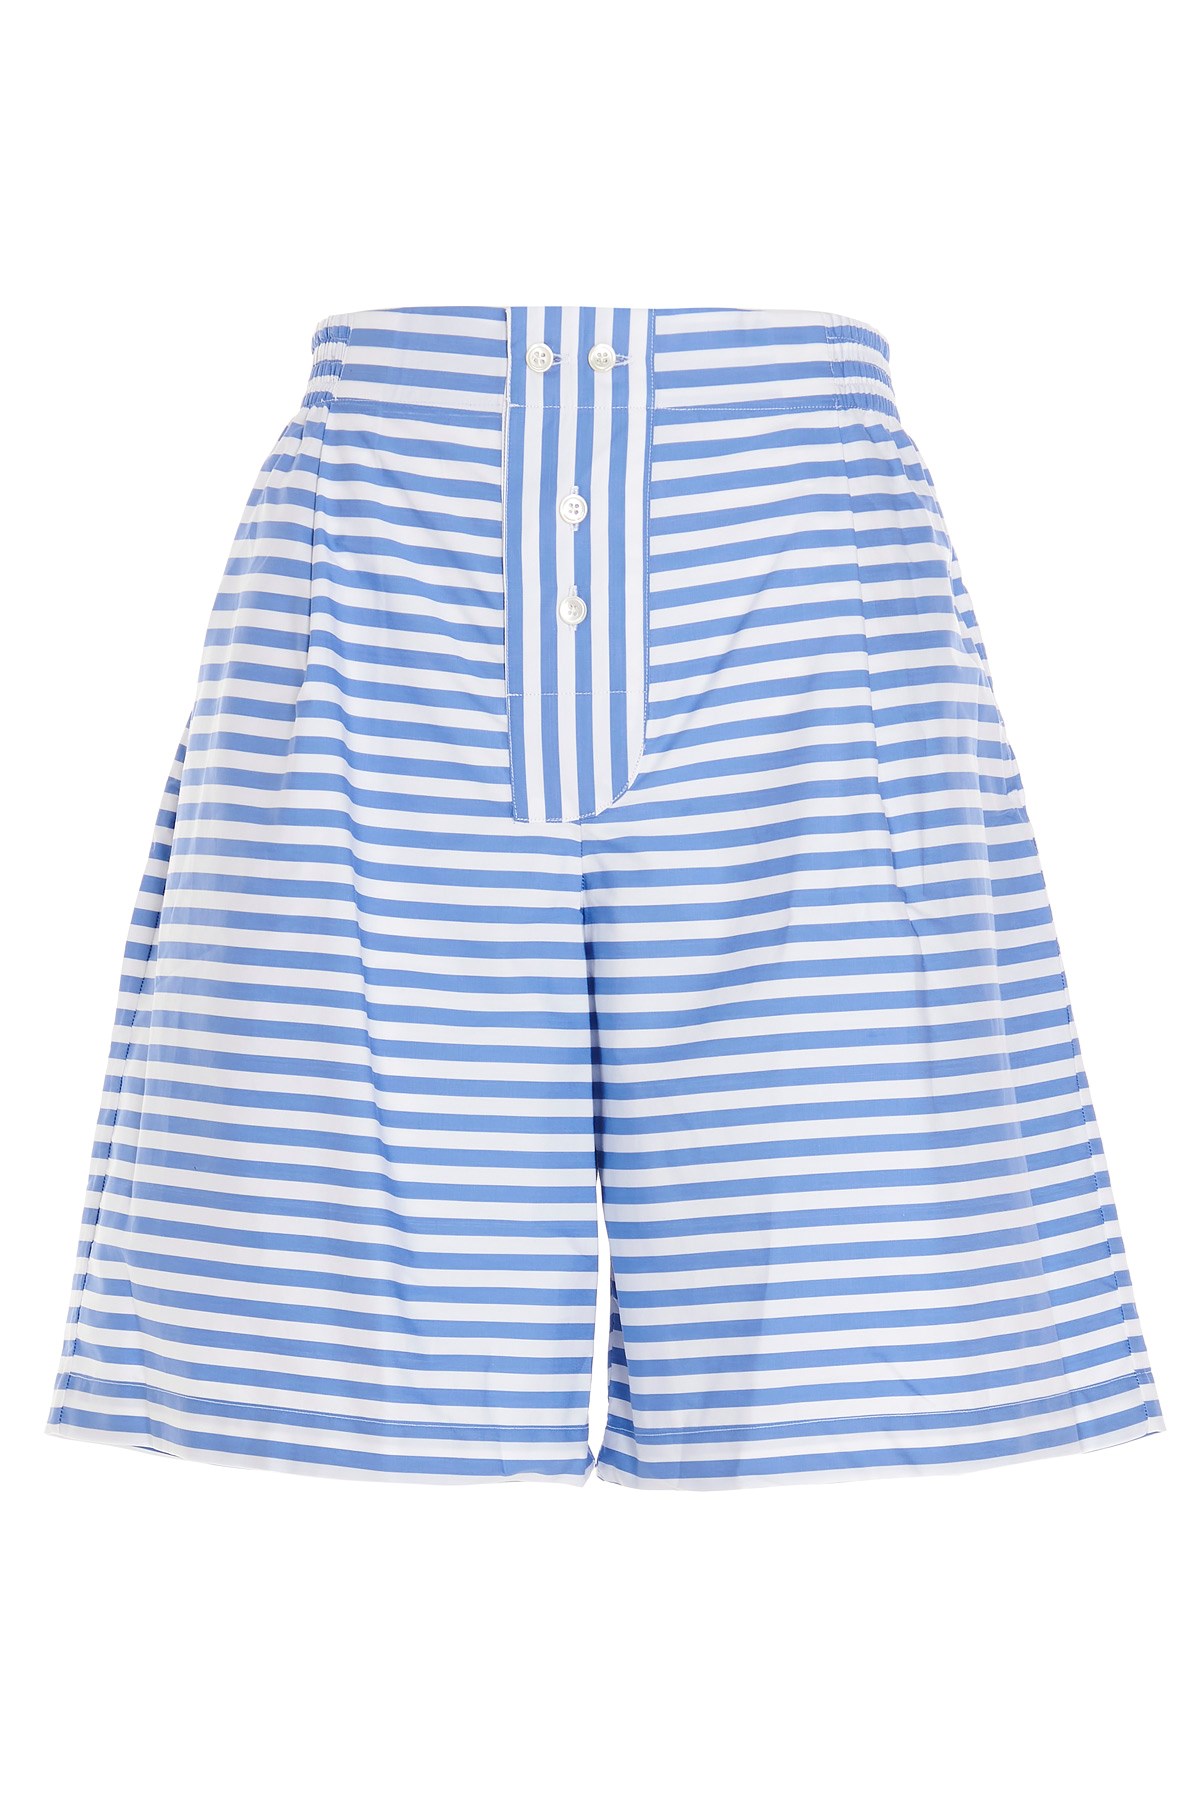 SEBLINE Striped Bermuda Shorts